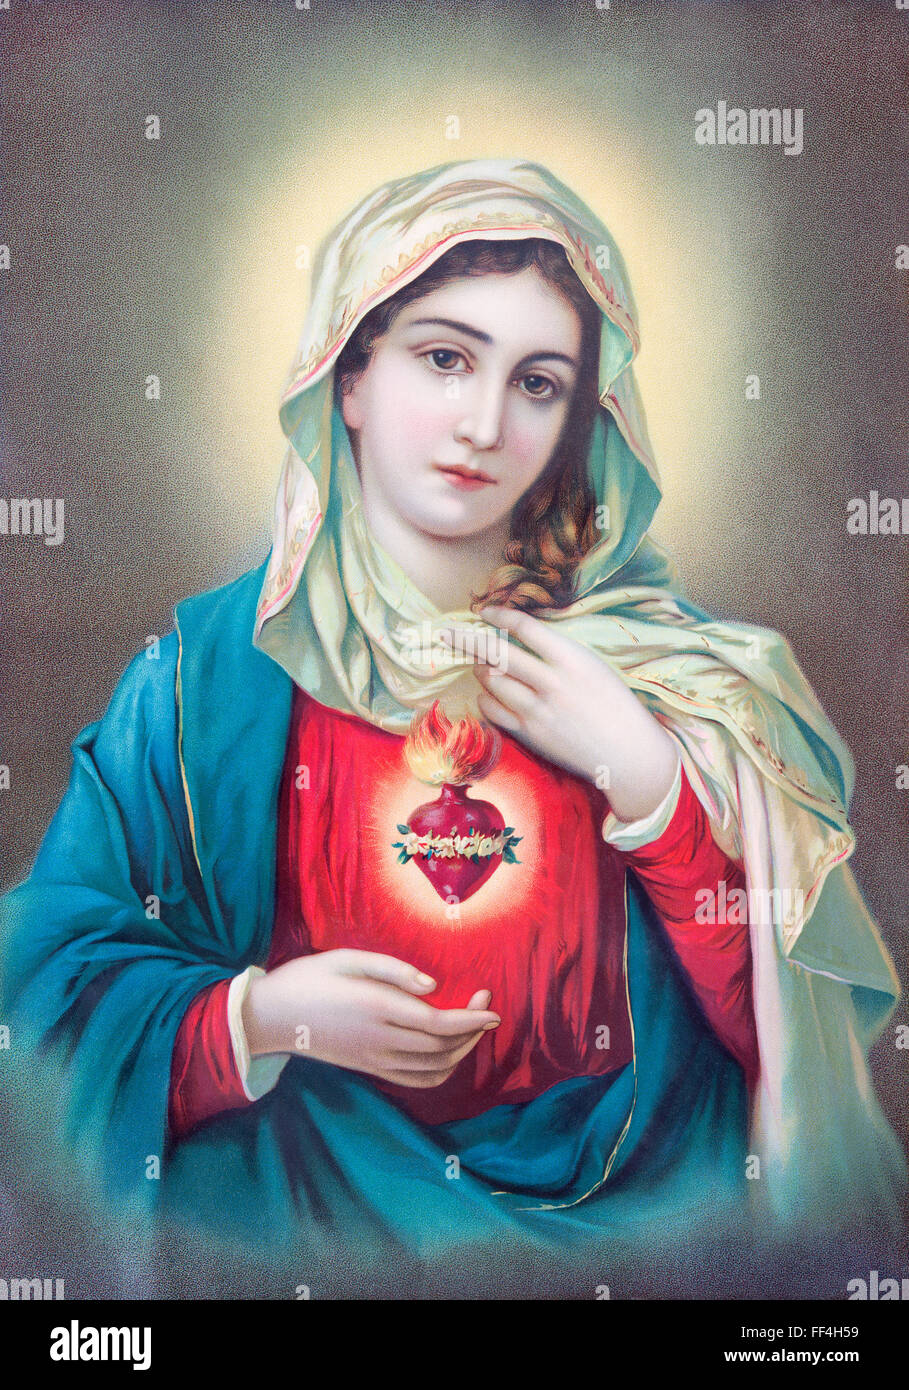 SEBECHLEBY, Slovacchia - 27 luglio 2015: tipica immagine cattolica del cuore della Vergine Maria dalla Slovacchia, dall artista sconosciuto del XX sec.. Foto Stock